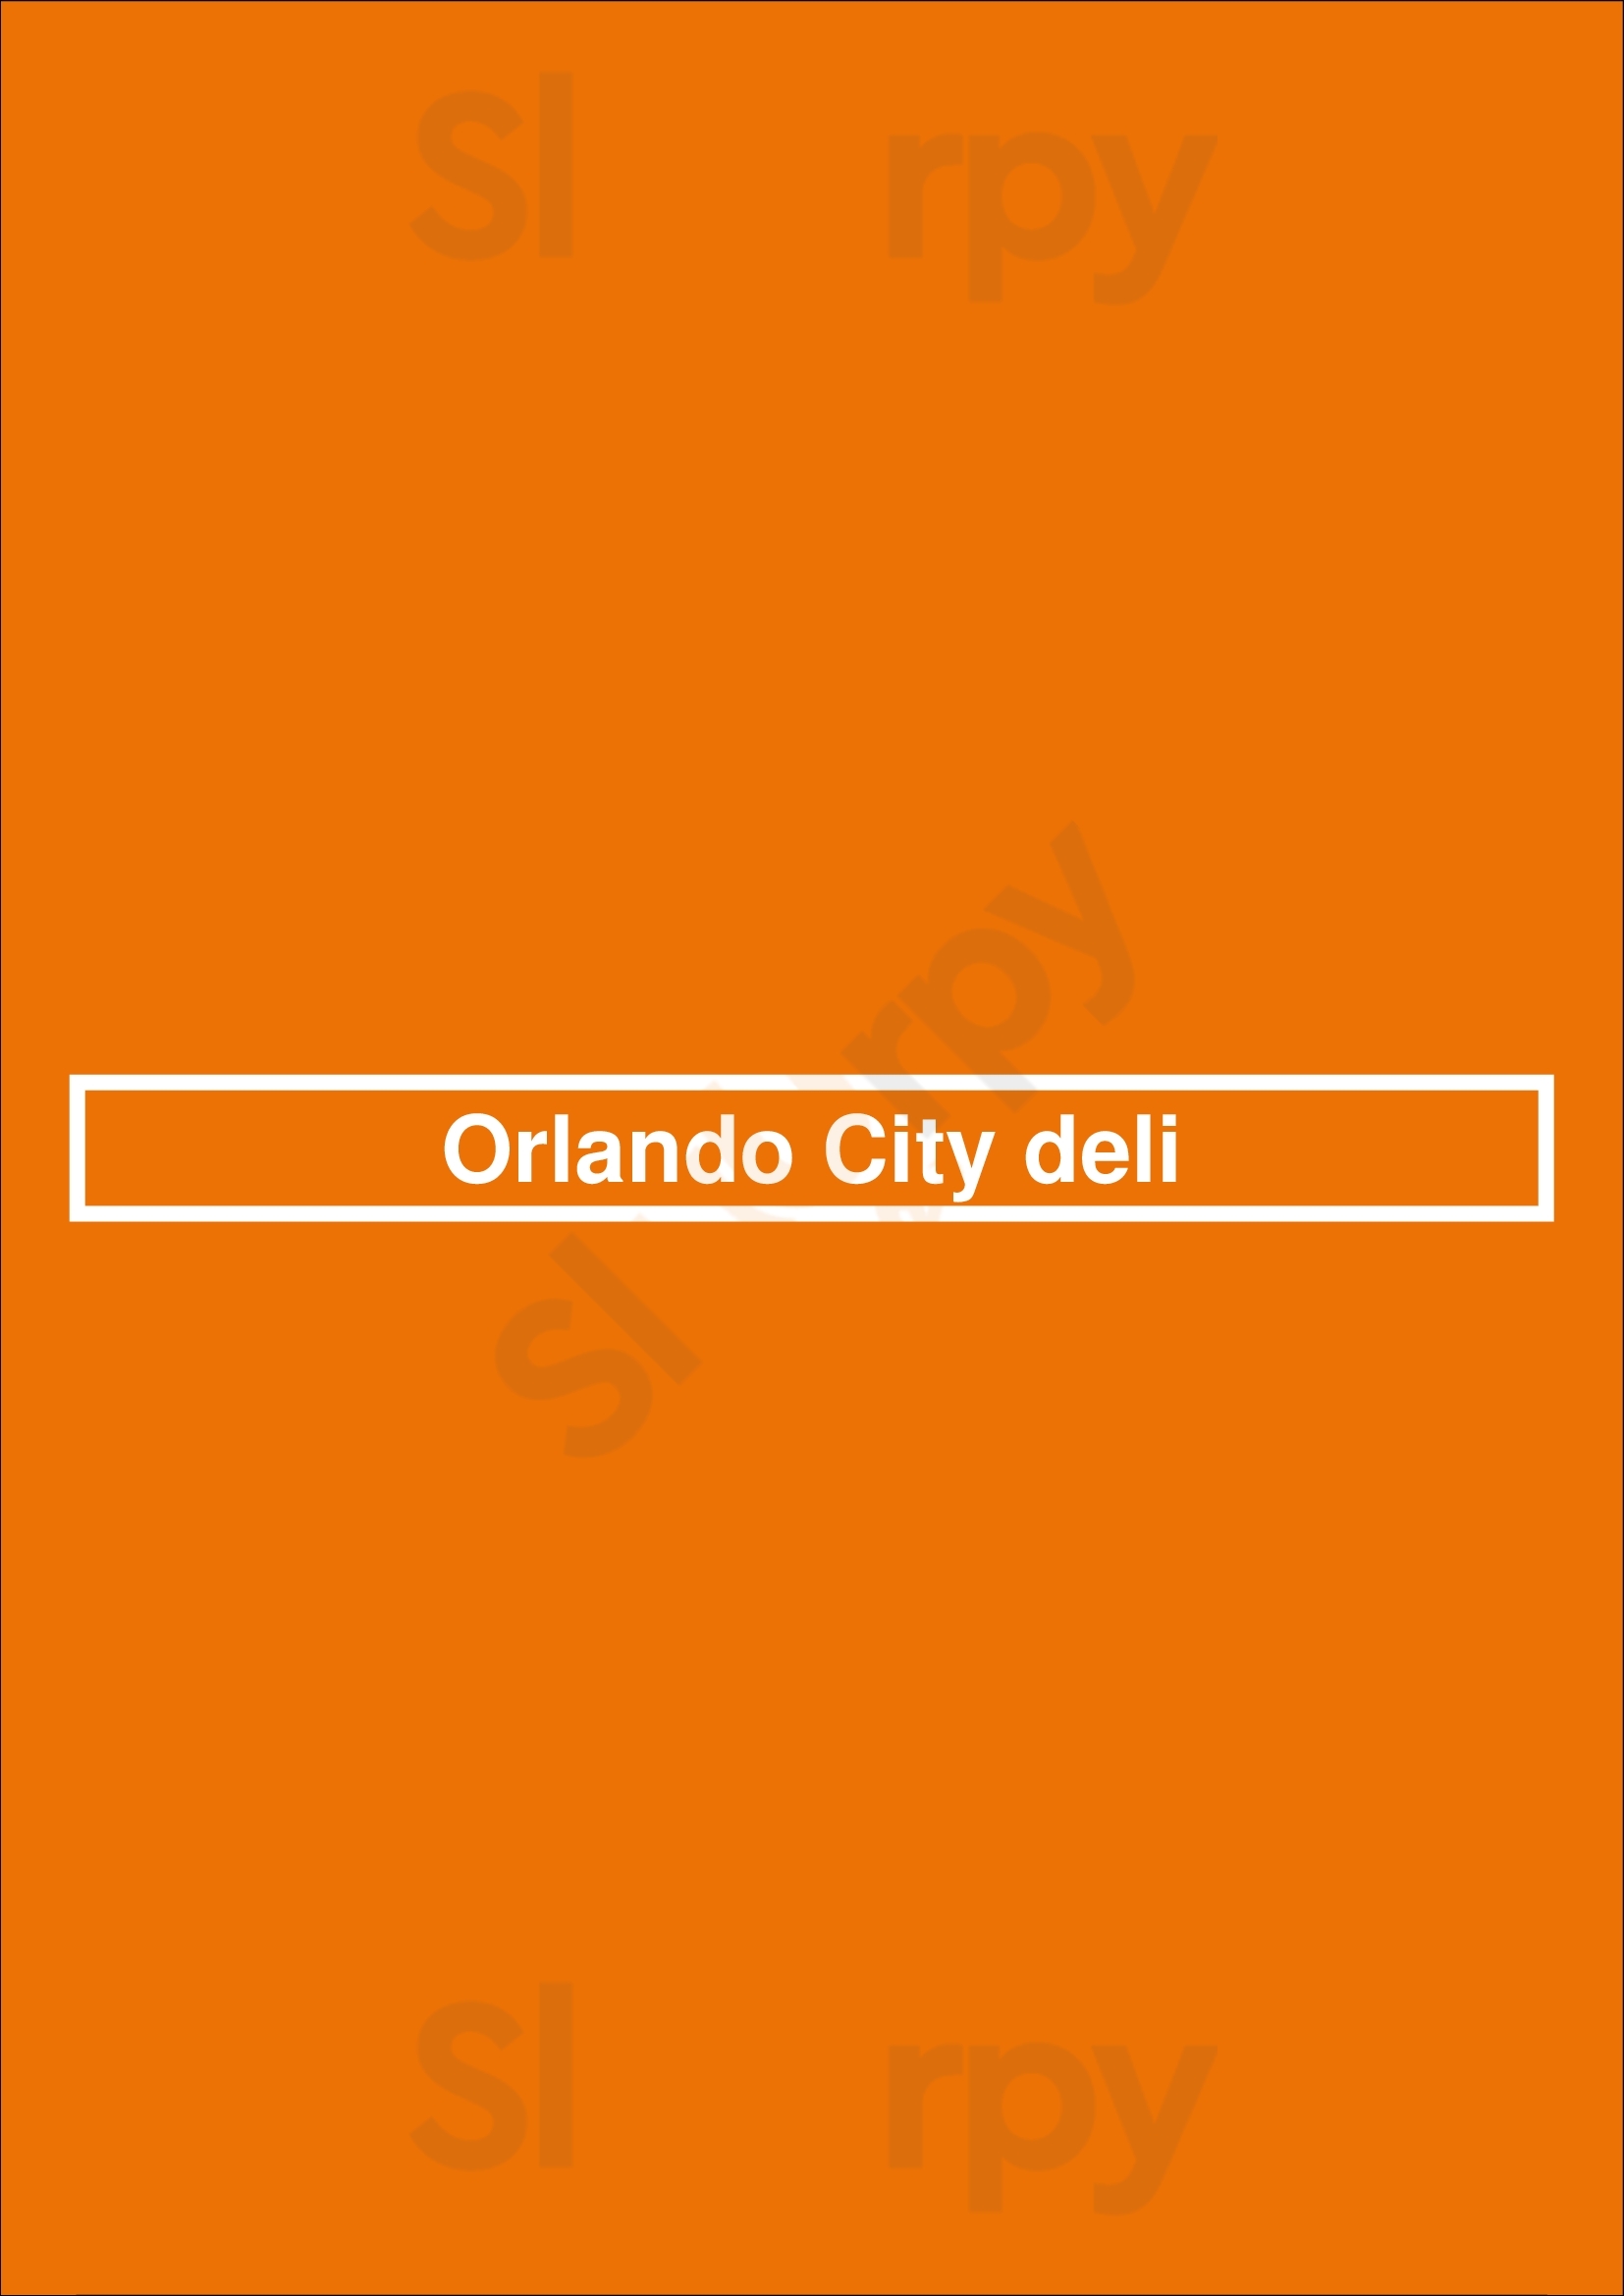 Orlando City Deli Orlando Menu - 1